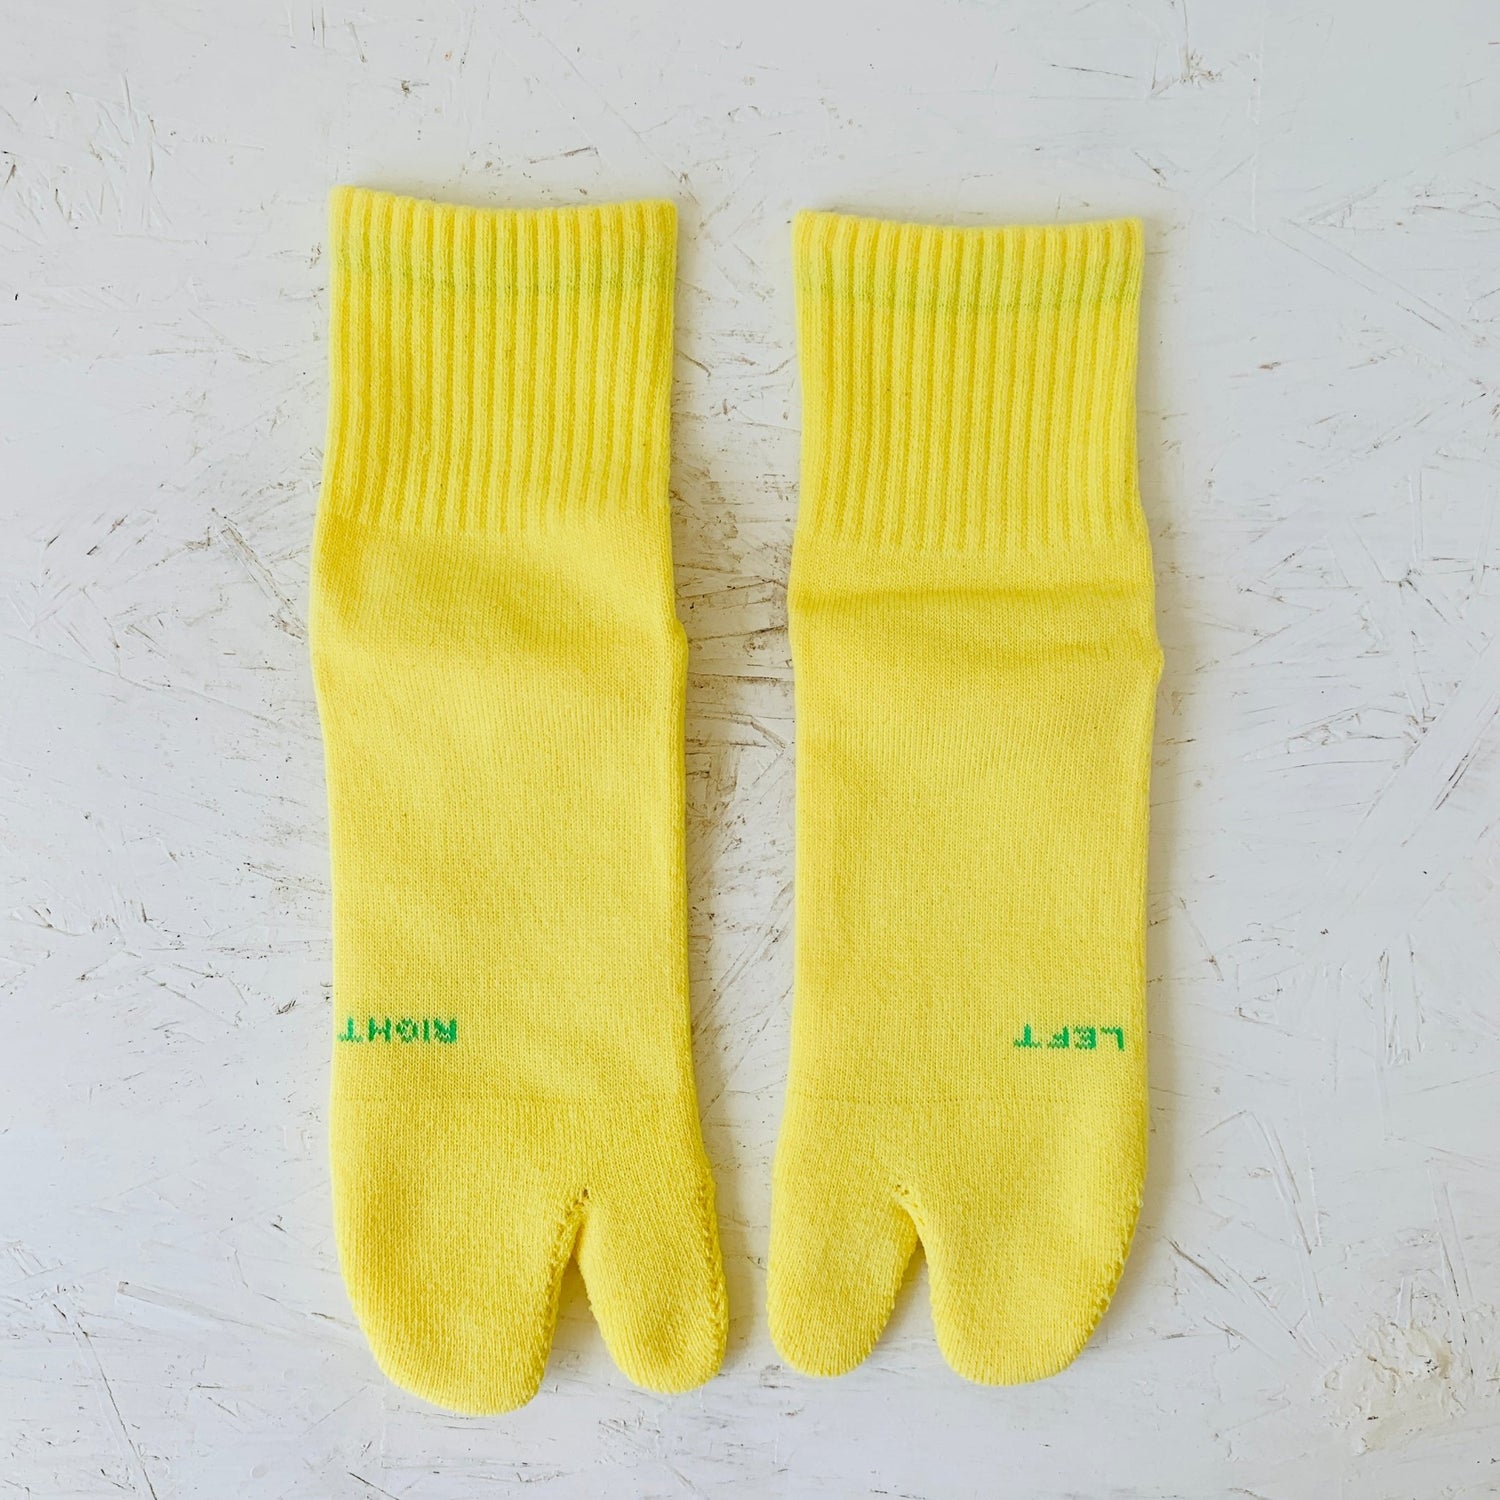 AMITABI STOKED! Pile Short Tabi Socks -Taiko Co.Ltd - MIKAFleurHardgoods